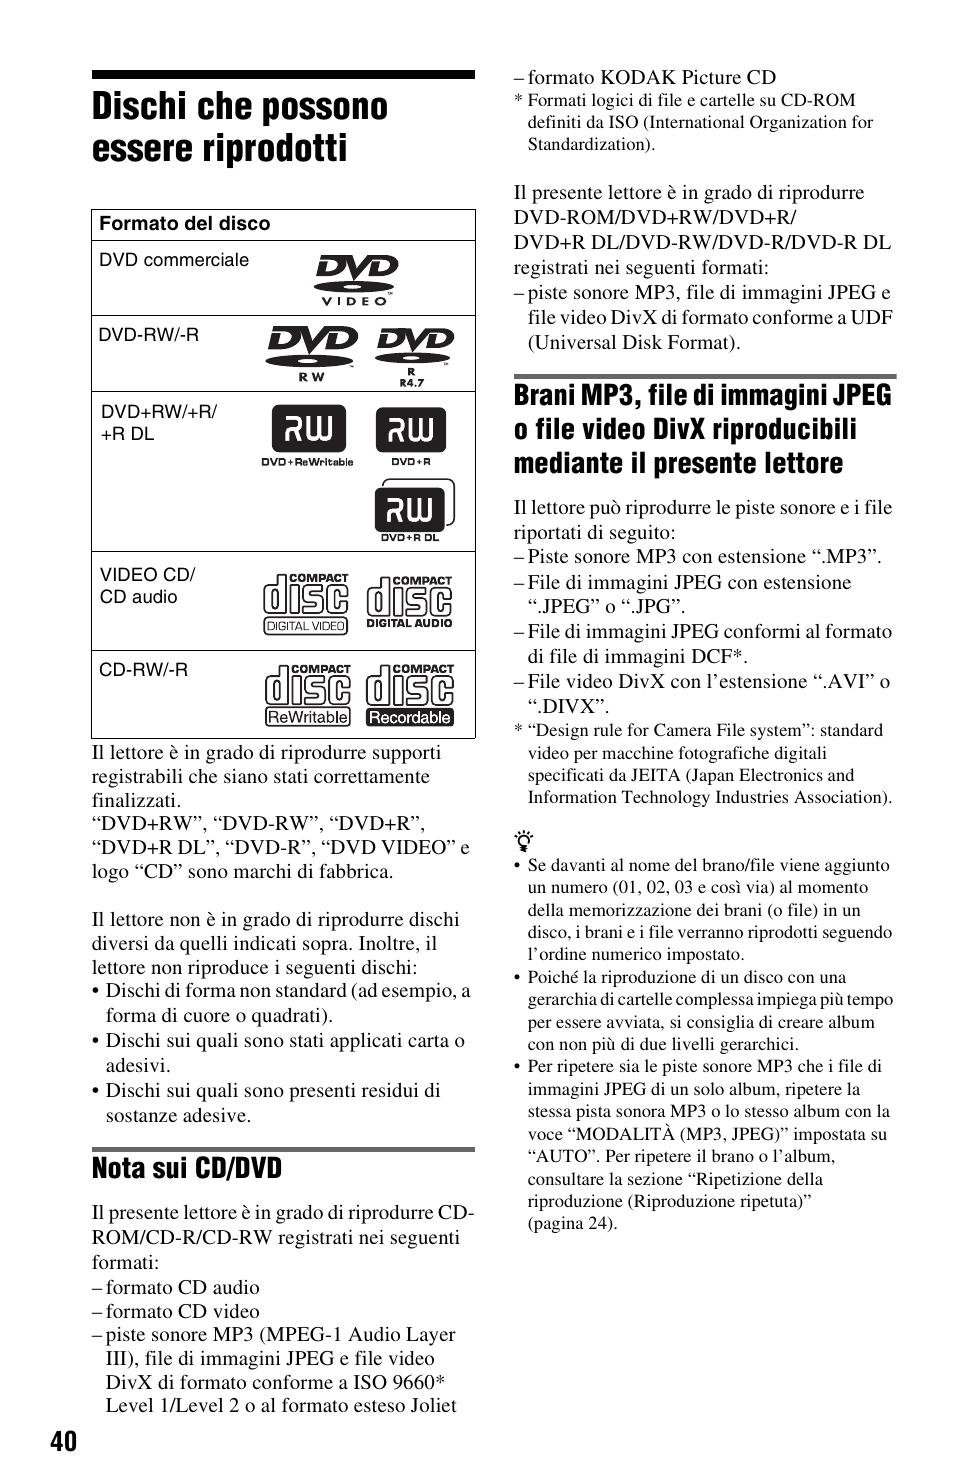 Dischi che possono essere riprodotti, Nota sui cd/dvd | Sony DVP-SR100 Manuale d'uso | Pagina 40 / 48